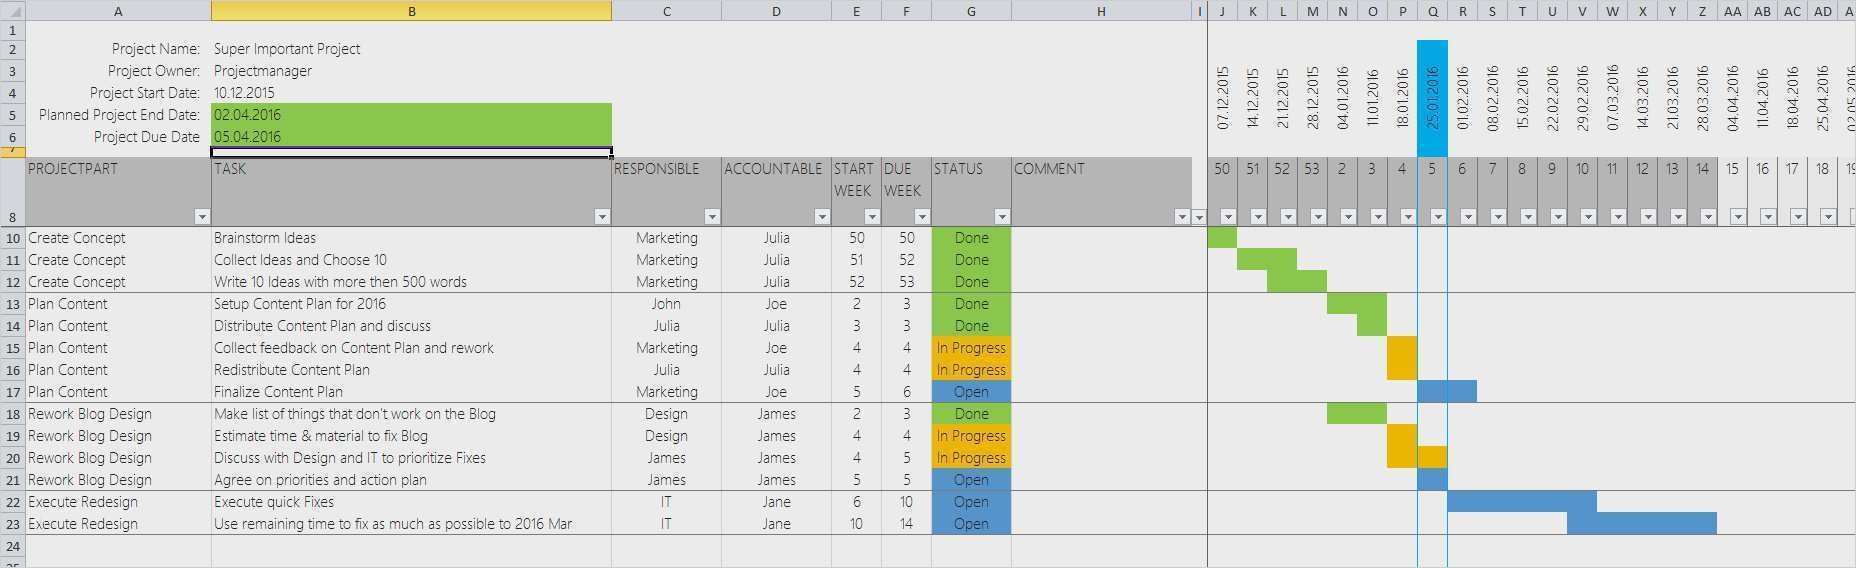 Projektplan Gantt Diagramm Excel Vorlage 22 Cool Ebendiese Konnen Einstellen In Ms Word Projektplan Vorlage Excel Vorlage Projektplan Excel